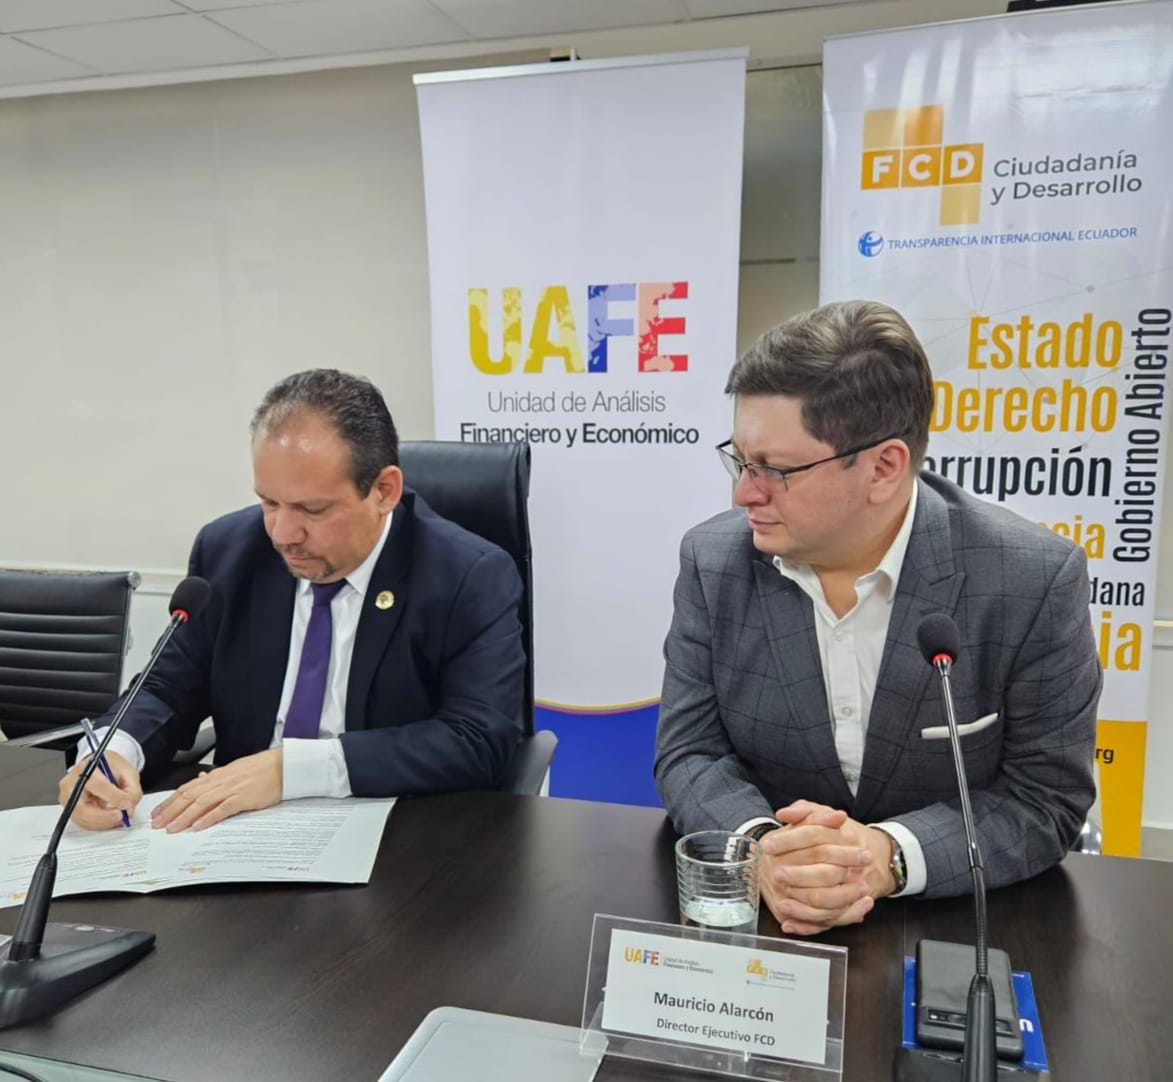 ¡Trabajamos por #ElNuevoEcuador!

#UAFE y @FCD_Ecuador se unen para prevenir el #LavadoDeActivos y otros delitos en 🇪🇨. 

✅El compromiso se plasmó a través de la firma del Convenio Marco de Cooperación entre ambas entidades.

#TodosSomosUAFE